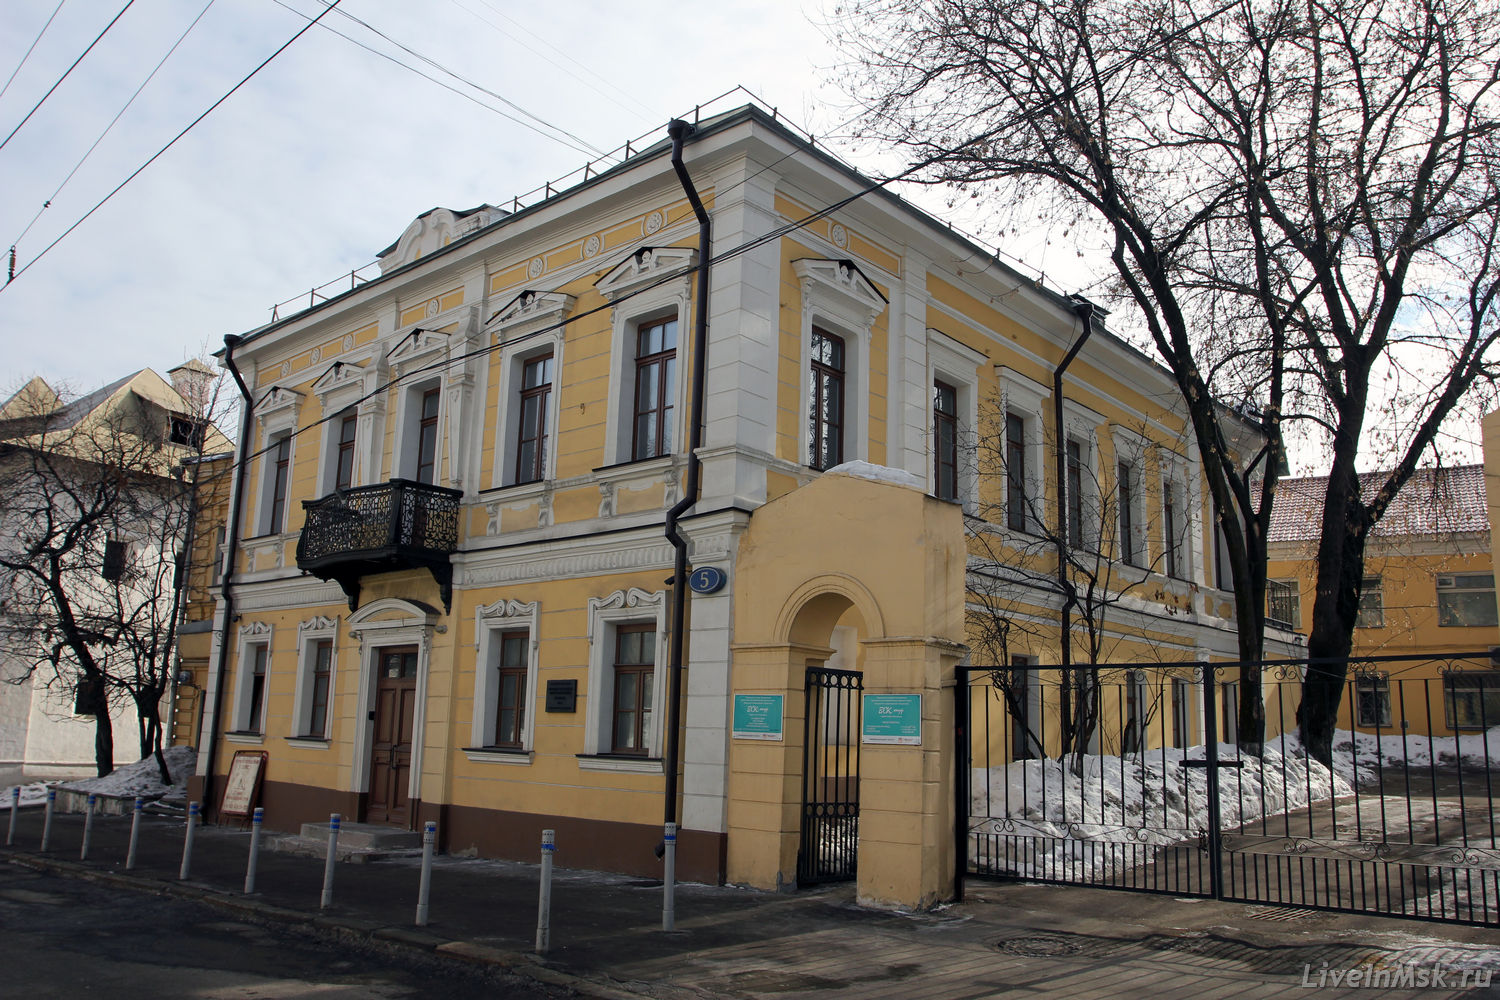 Усадьба Суровщикова на Пречистенке, фото 2015 года